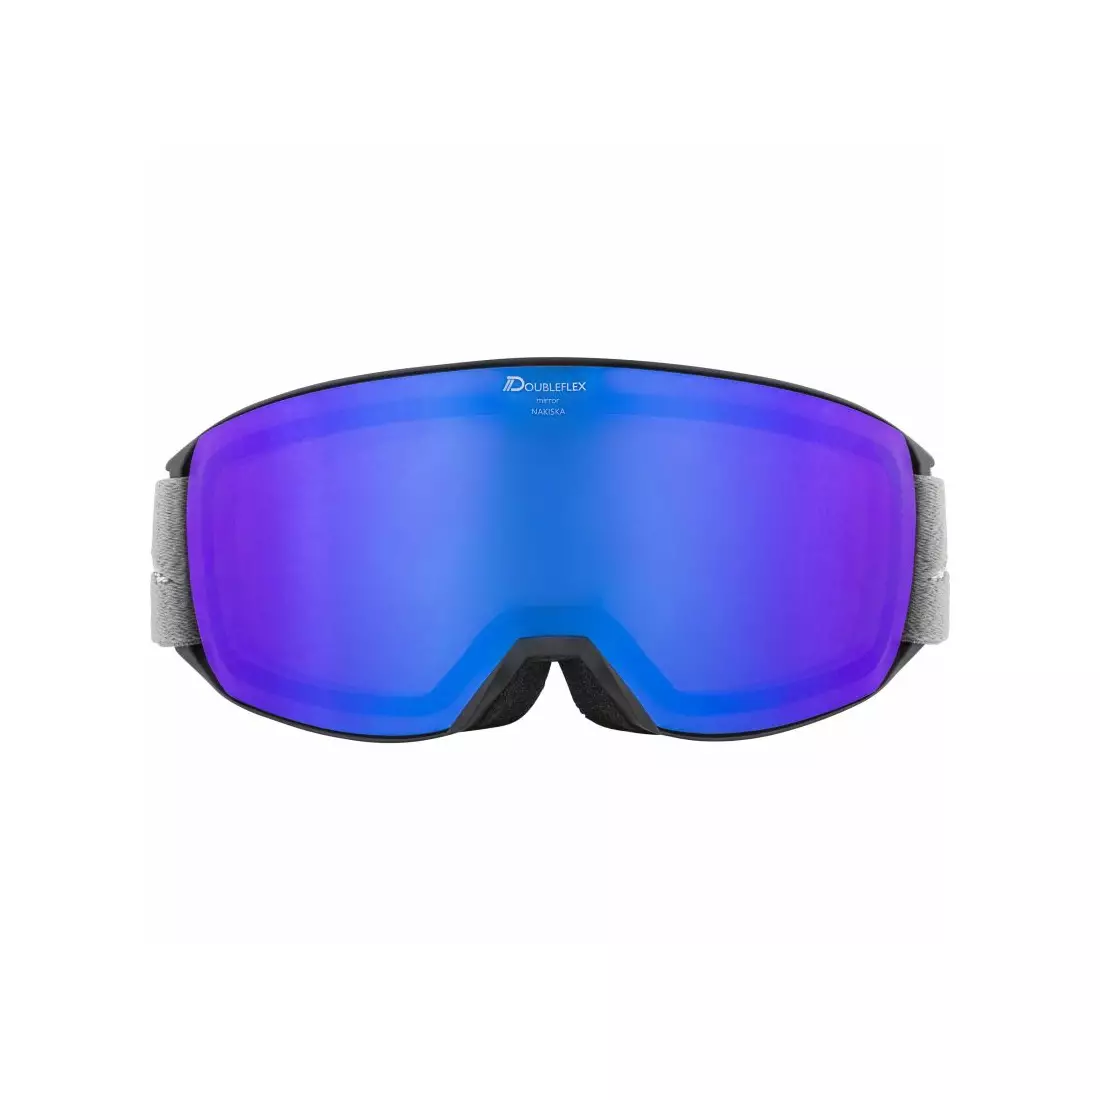 ALPINA sí/snowboard szemüveg M40 NAKISKA HM fekete-szürke A7280832